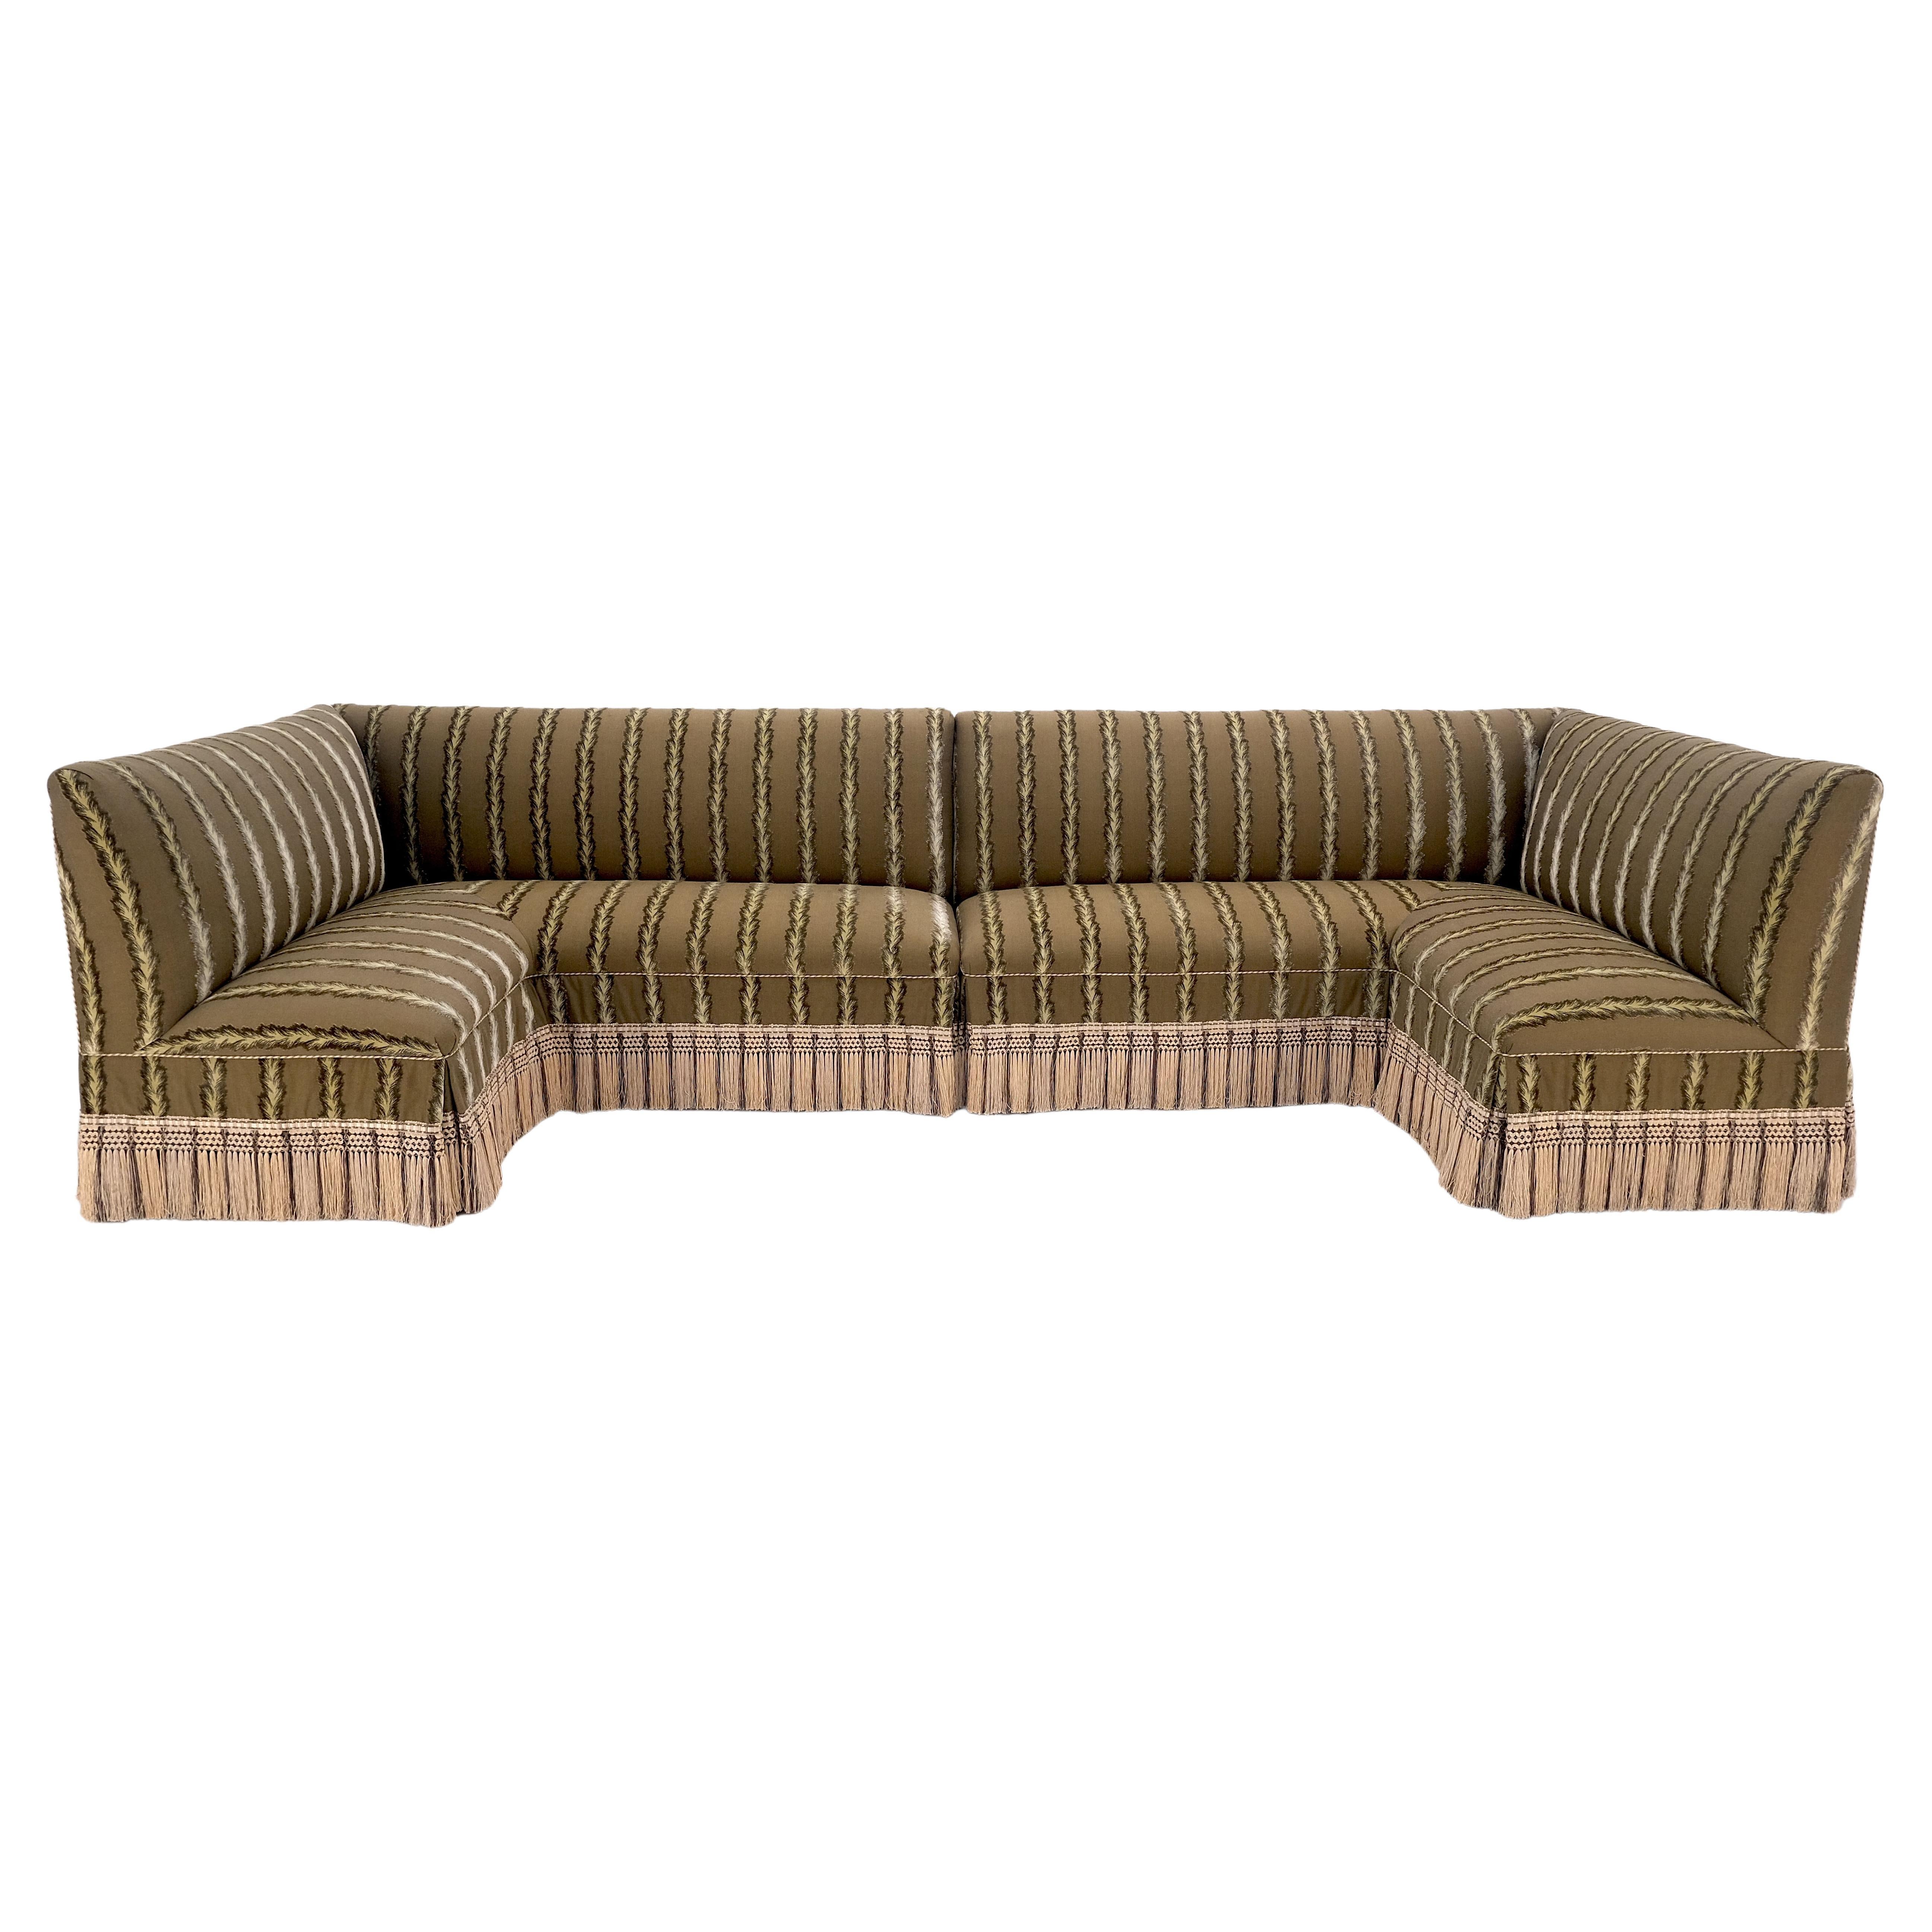 Zwei-Wege-zwei-Teil-"C"-Form gestreifte Polsterung benutzerdefinierte Sofa Couch w / Quasten MINT!